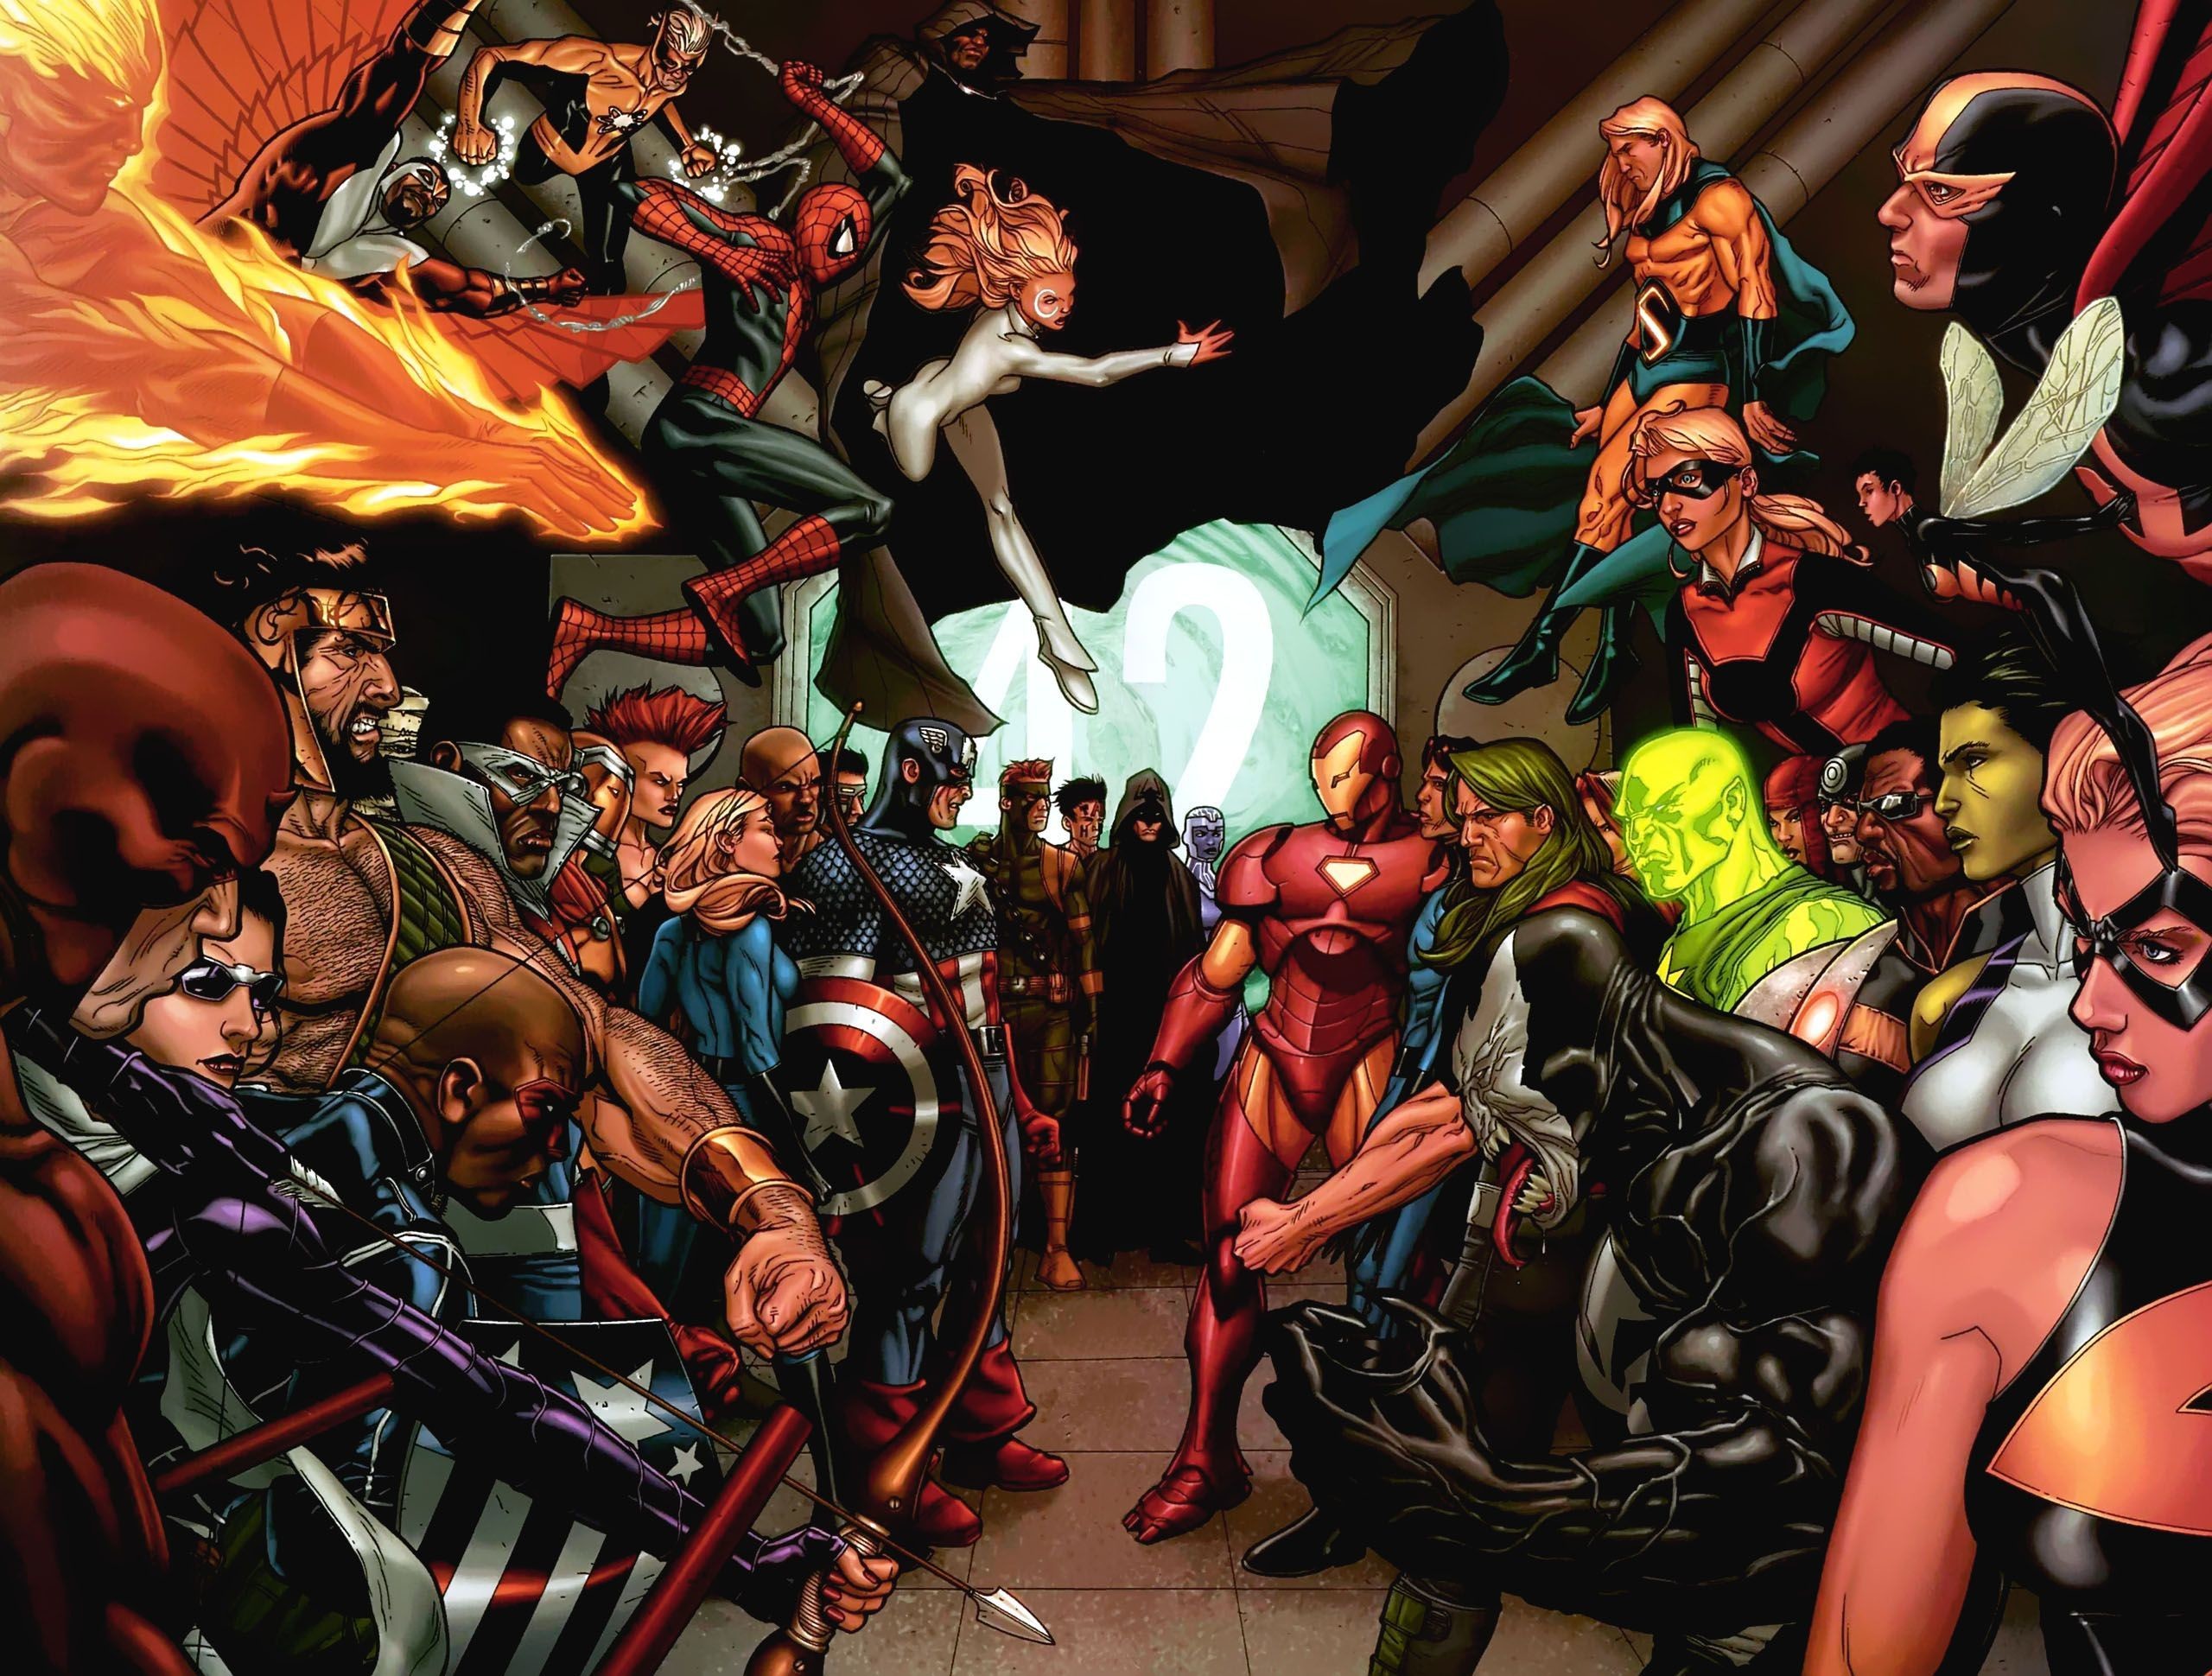 2560x1940 Desktop Fun: Heroes of Marvel Comics Wallpaper Collection